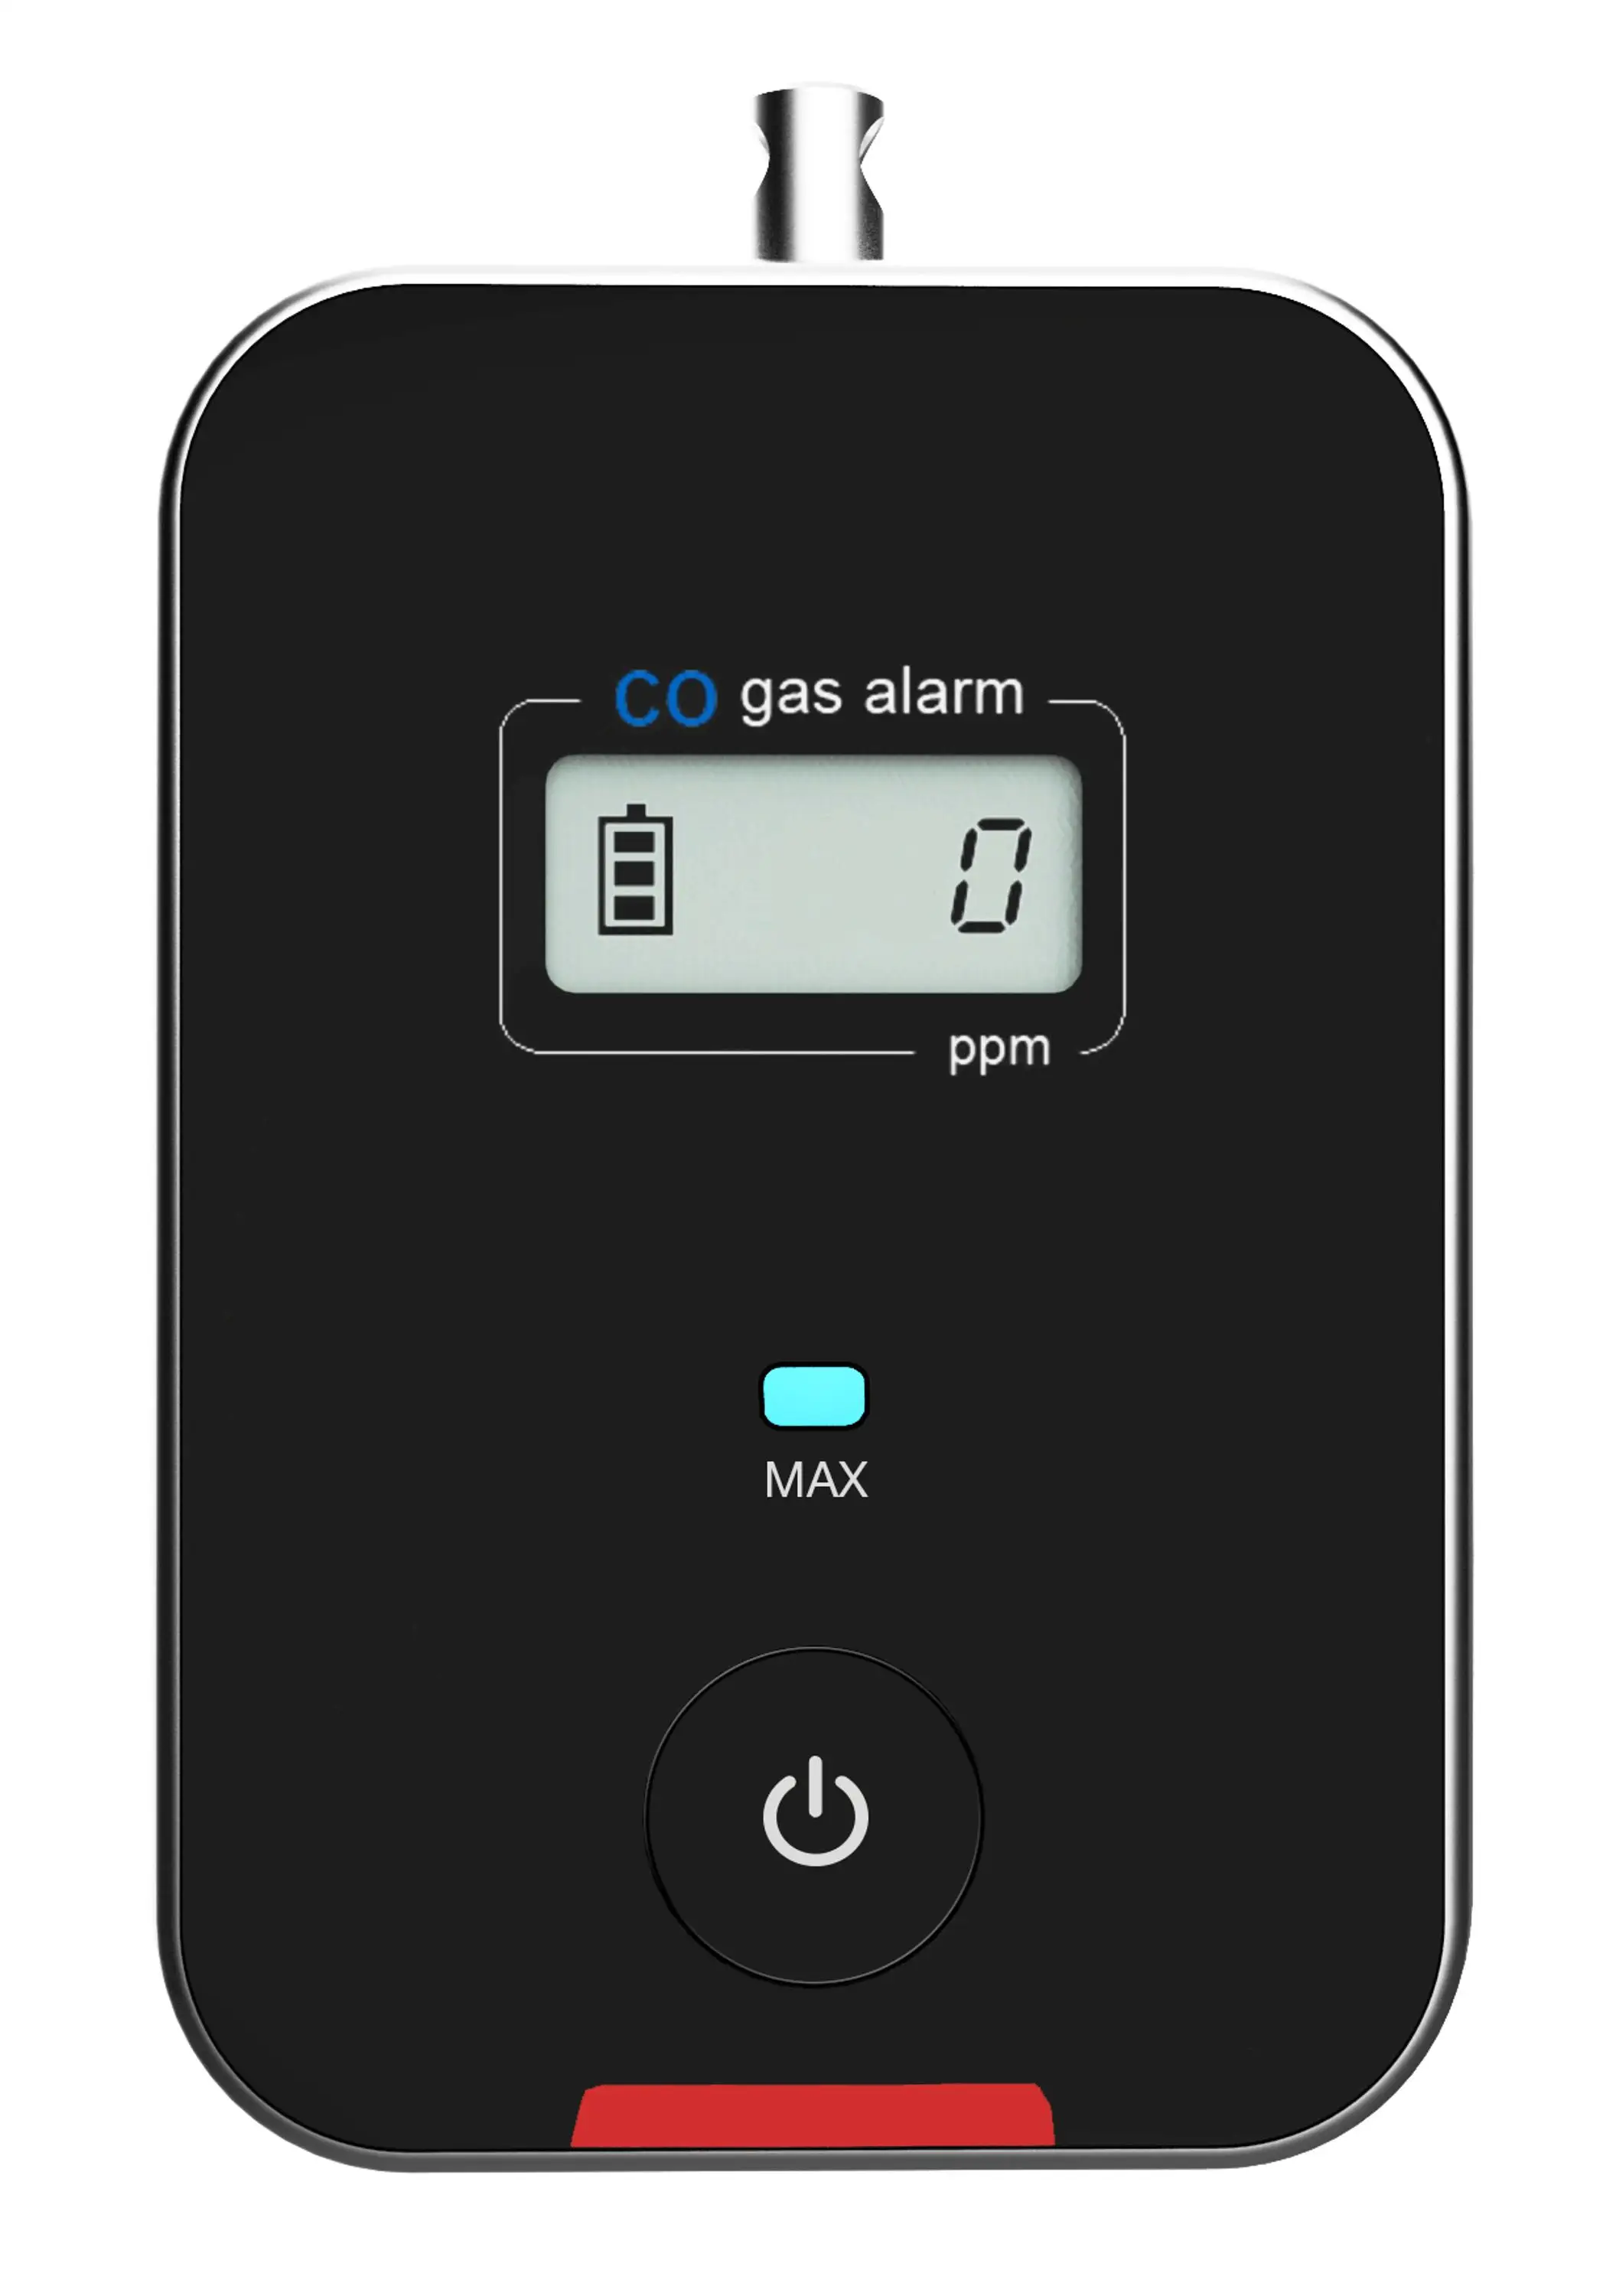 will carbon monoxide detector detect gas leak